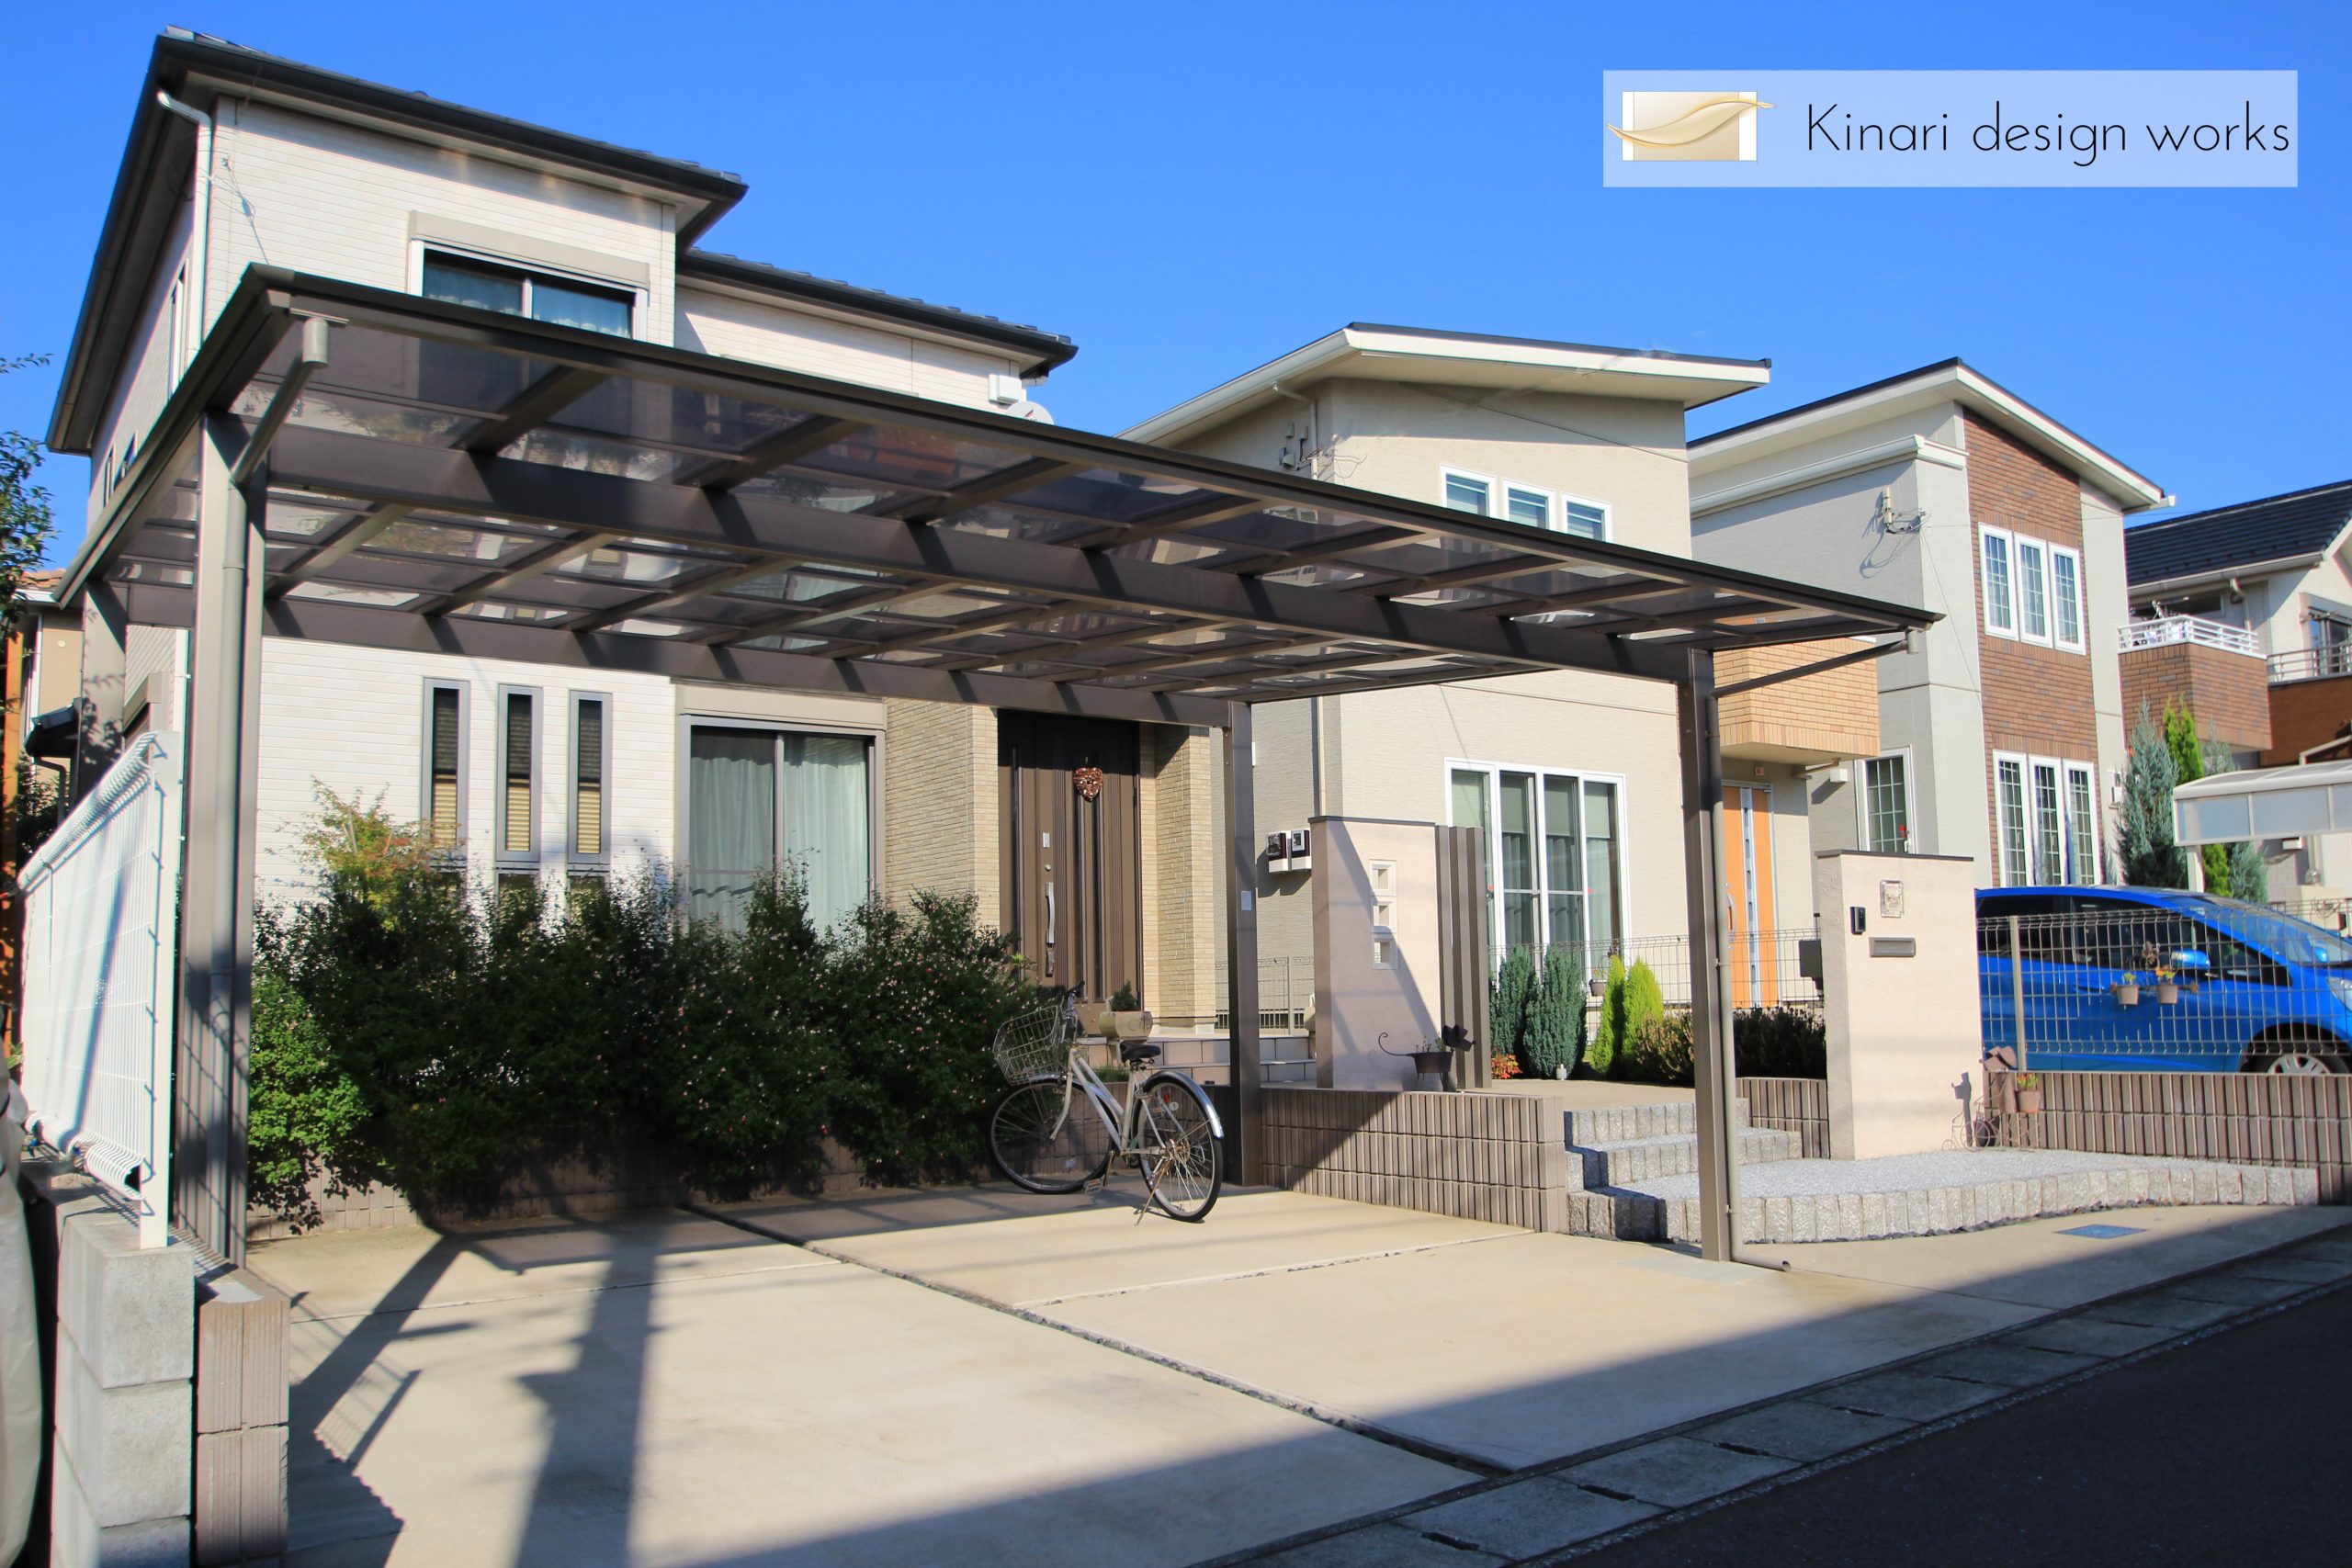 大きなカーポートがある家松戸市h様邸 一級建築士と叶える素敵なお庭 千葉市 エクステリア 外構 ガーデン キナリデザイン